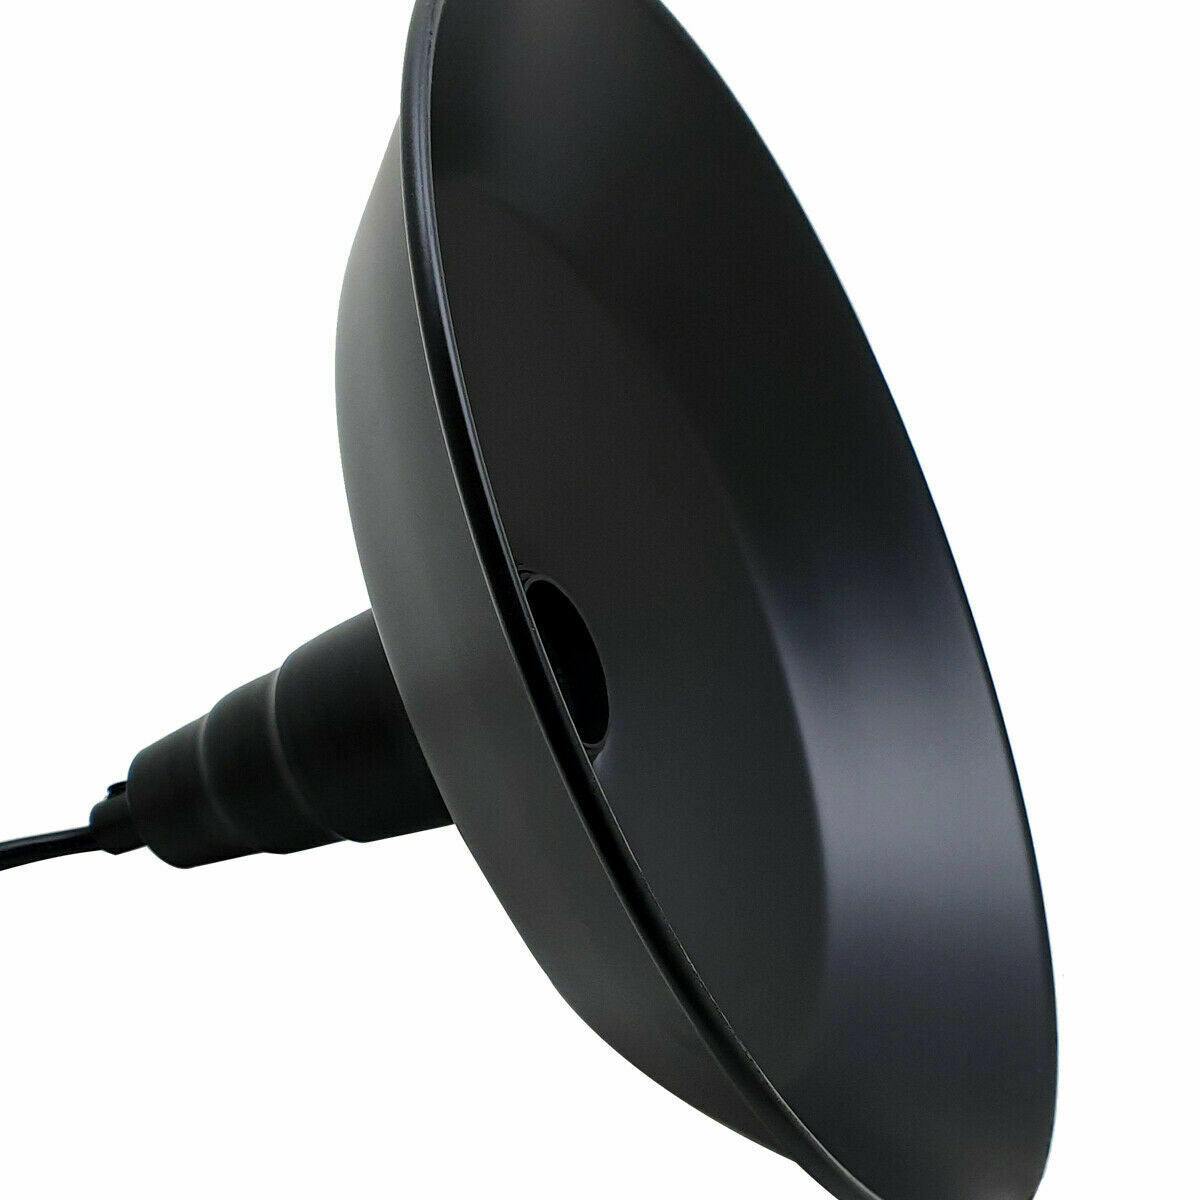 Industrial Vintage New Pendant Ceiling Light 260cm Bowl Shade Black E27Uk Holder~3727 - LEDSone UK Ltd